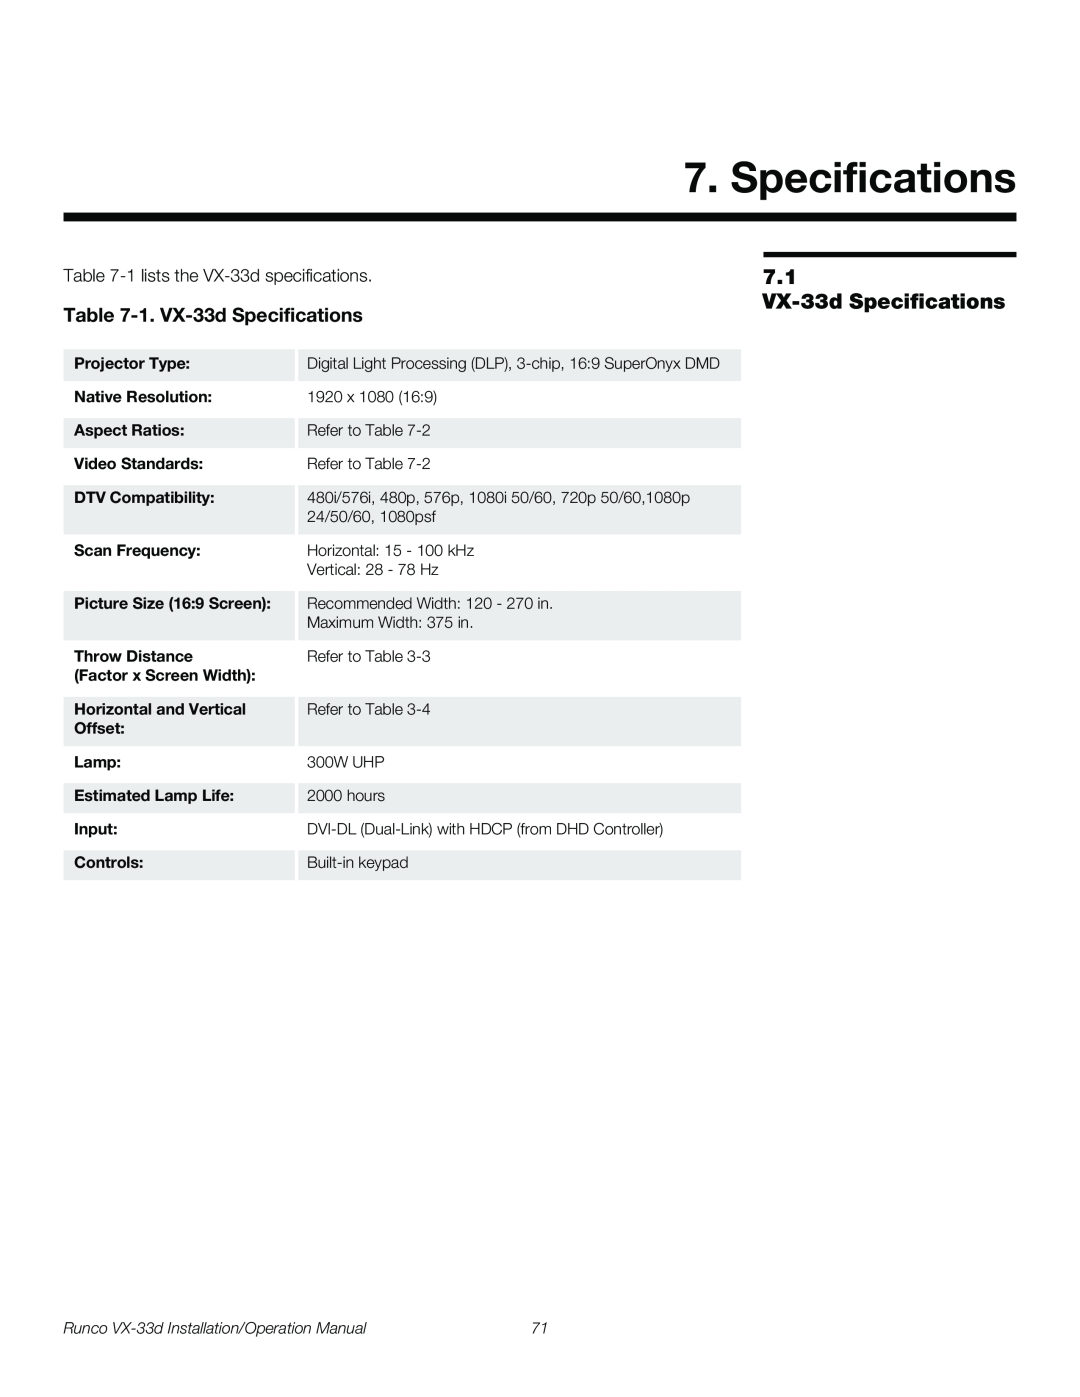 Runco VX-33D operation manual 1. VX-33d Specifications, Runco VX-33d Installation/Operation Manual 